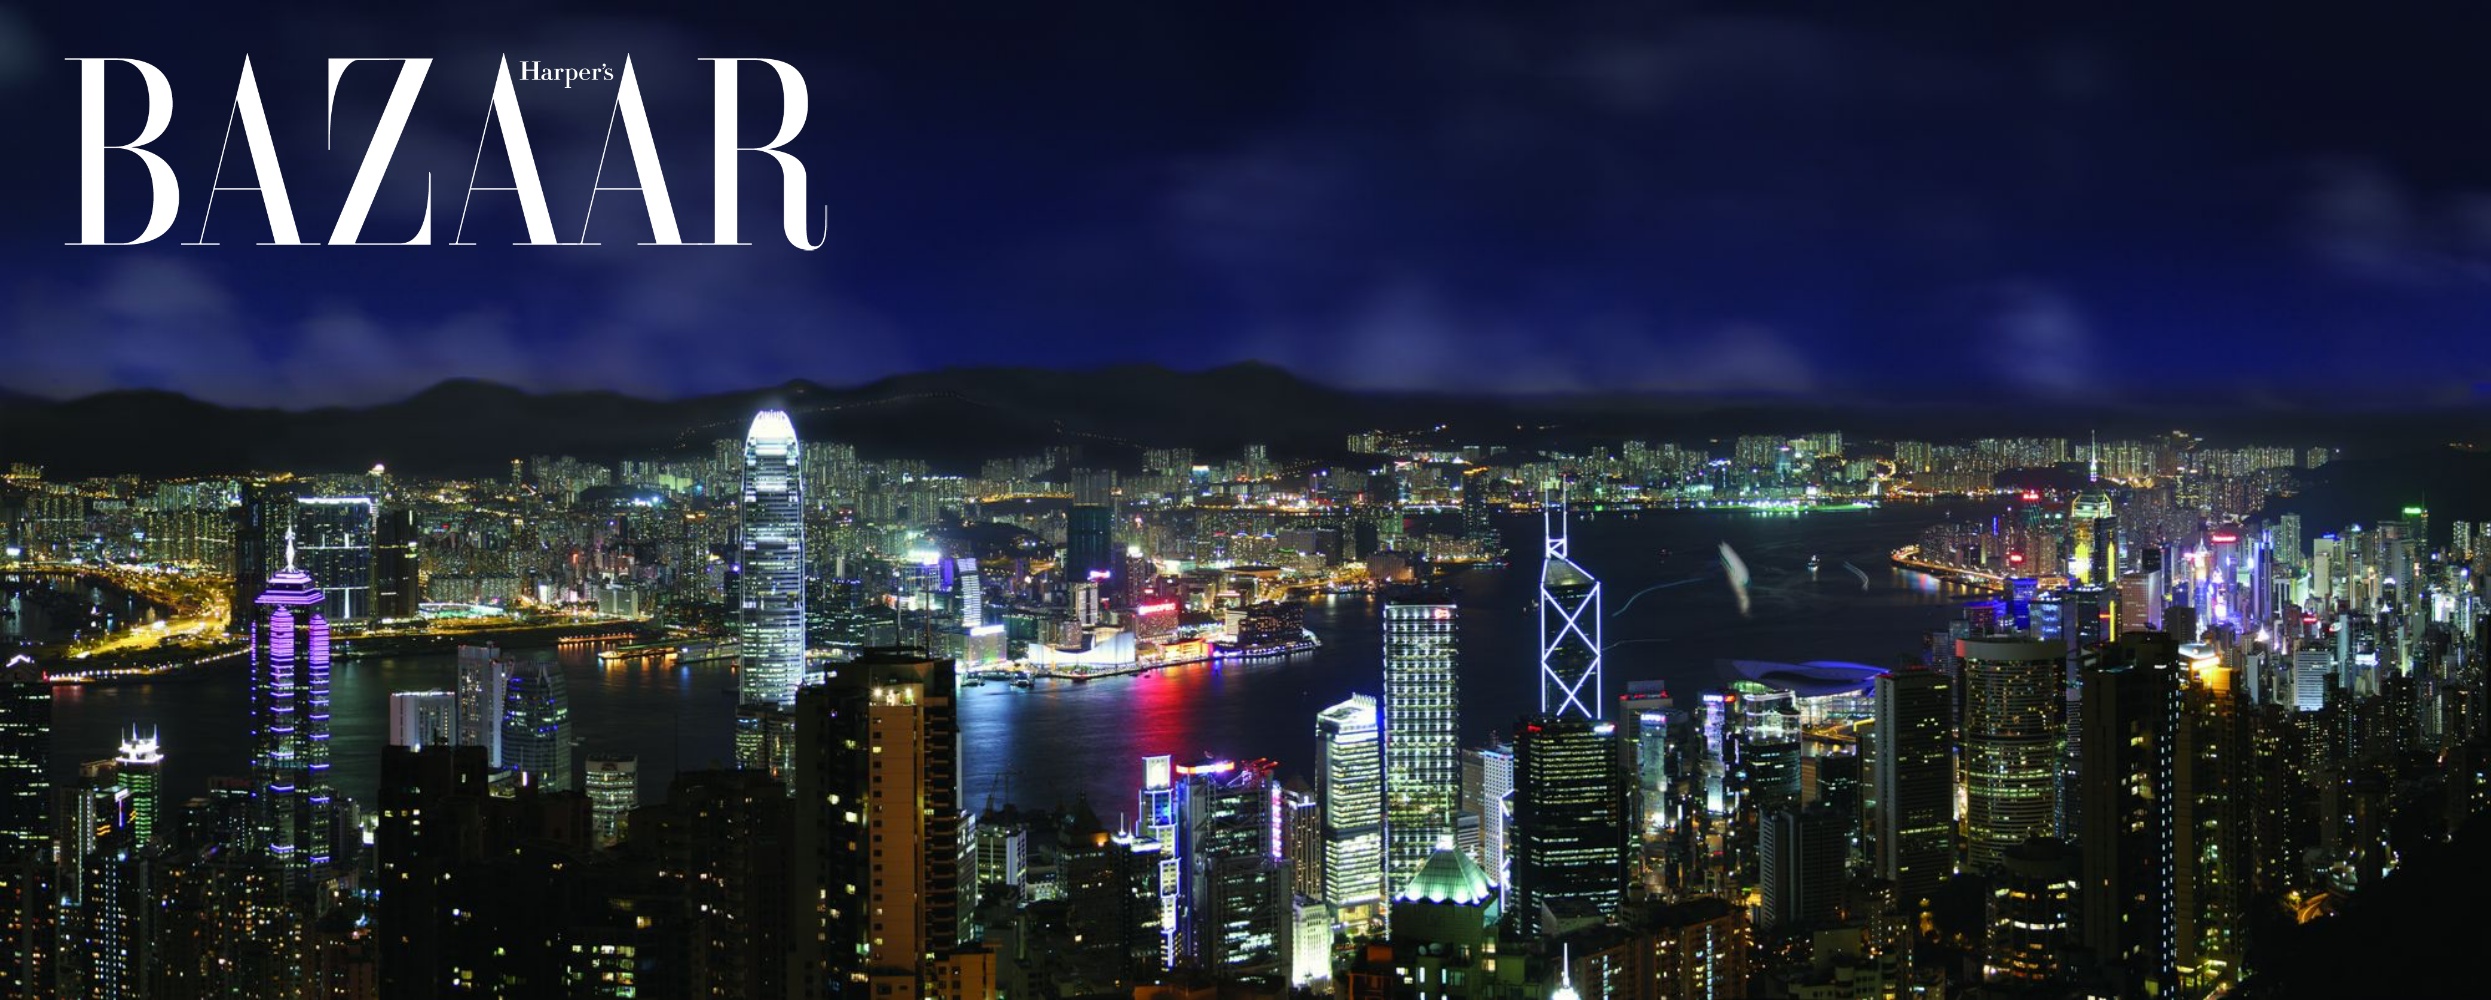 Khung cảnh panorama hút hồn của Hồng Kông, nhìn từ đỉnh núi Thái Bình. 